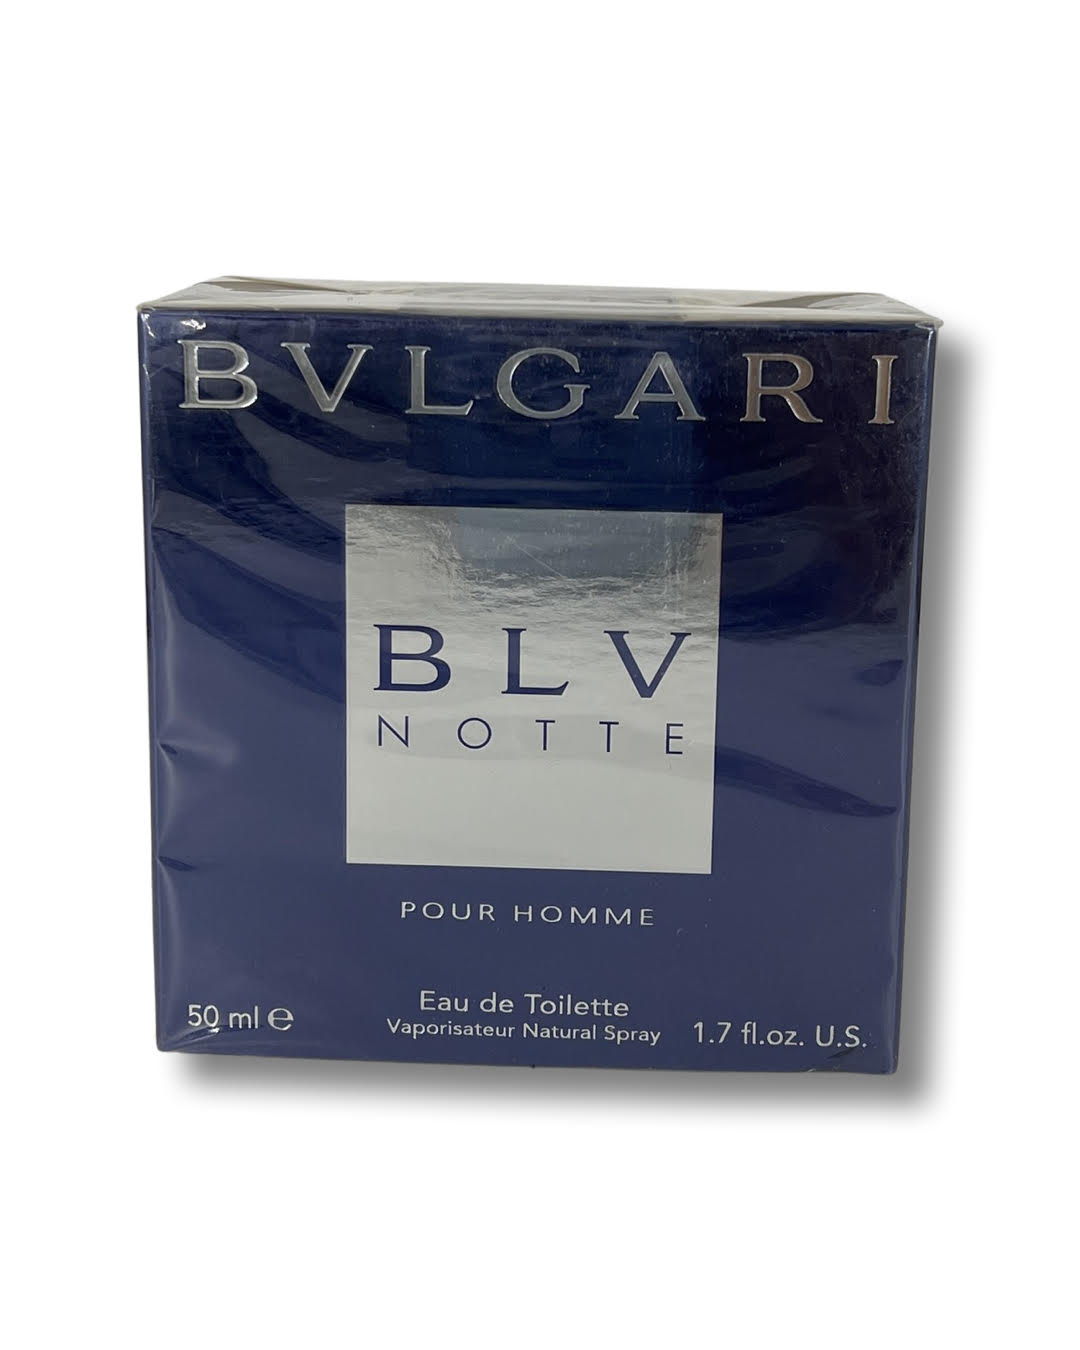 Bulgari+BLV+Notte+1.7oz+Men%27s+Eau+de+Toilette for sale online